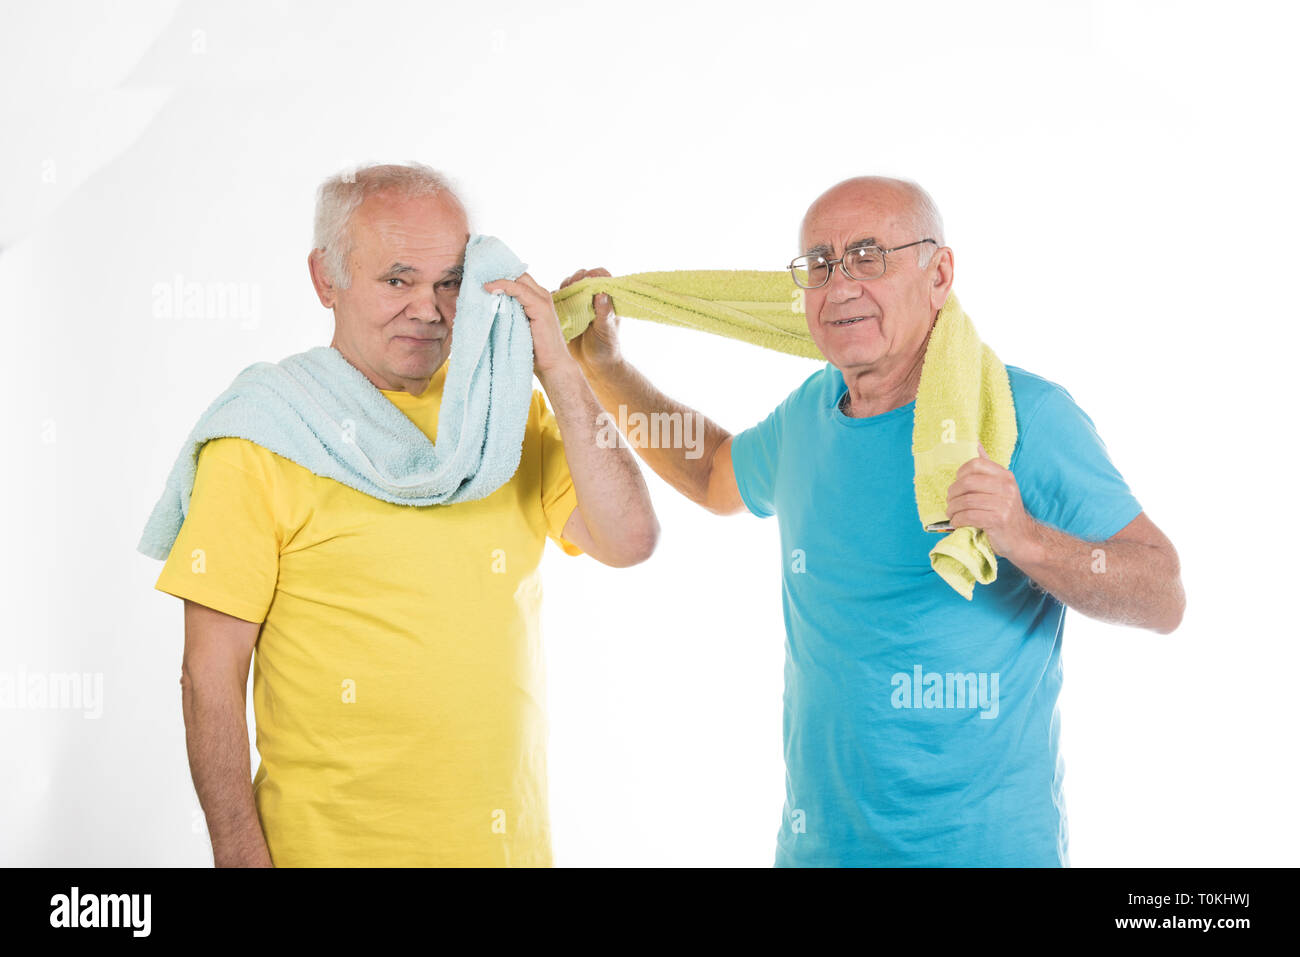 Zwei glücklich lächelnde ältere Männer nach dem Sport Training mit gelben und blauen T-shirts und Handtücher Stockfoto